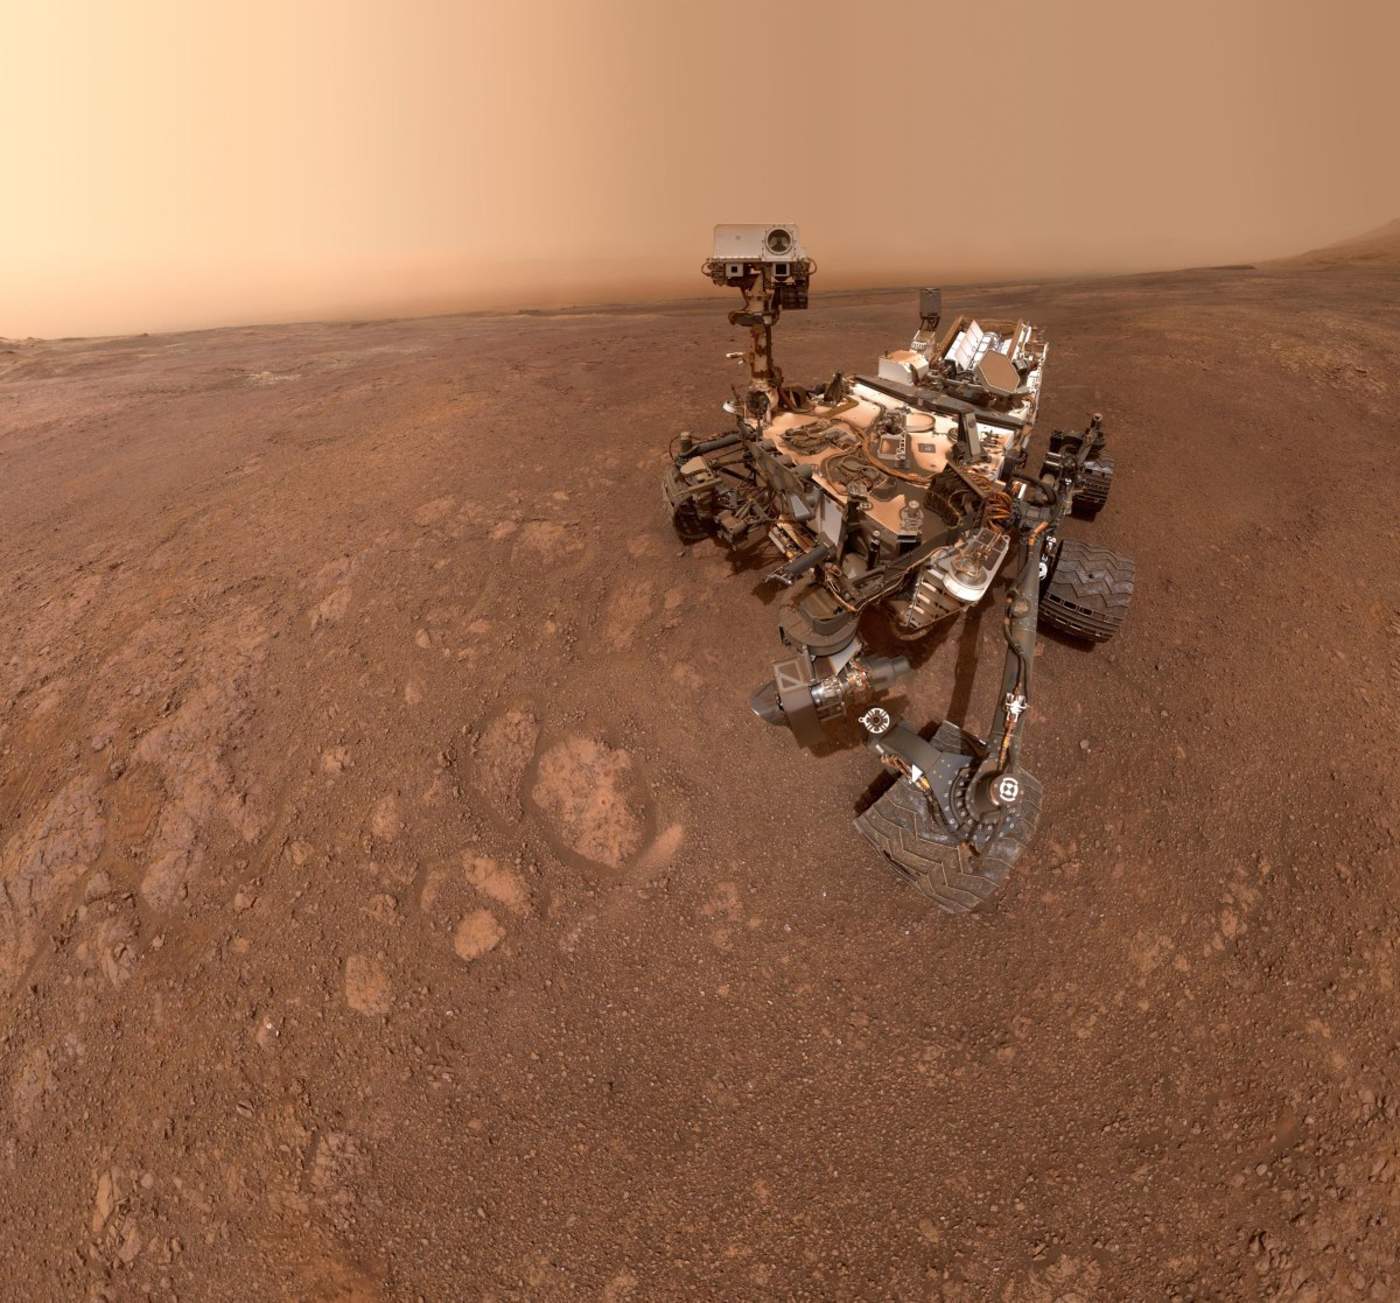 Según un comunicado de la agencia espacial estadounidense, el todoterreno 'Curiosity' ha terminado la exploración de la cresta montañosa Vera Rubin en Marte y se ha trasladado a un canal que separa esta zona de otros montes. (ESPECIAL)